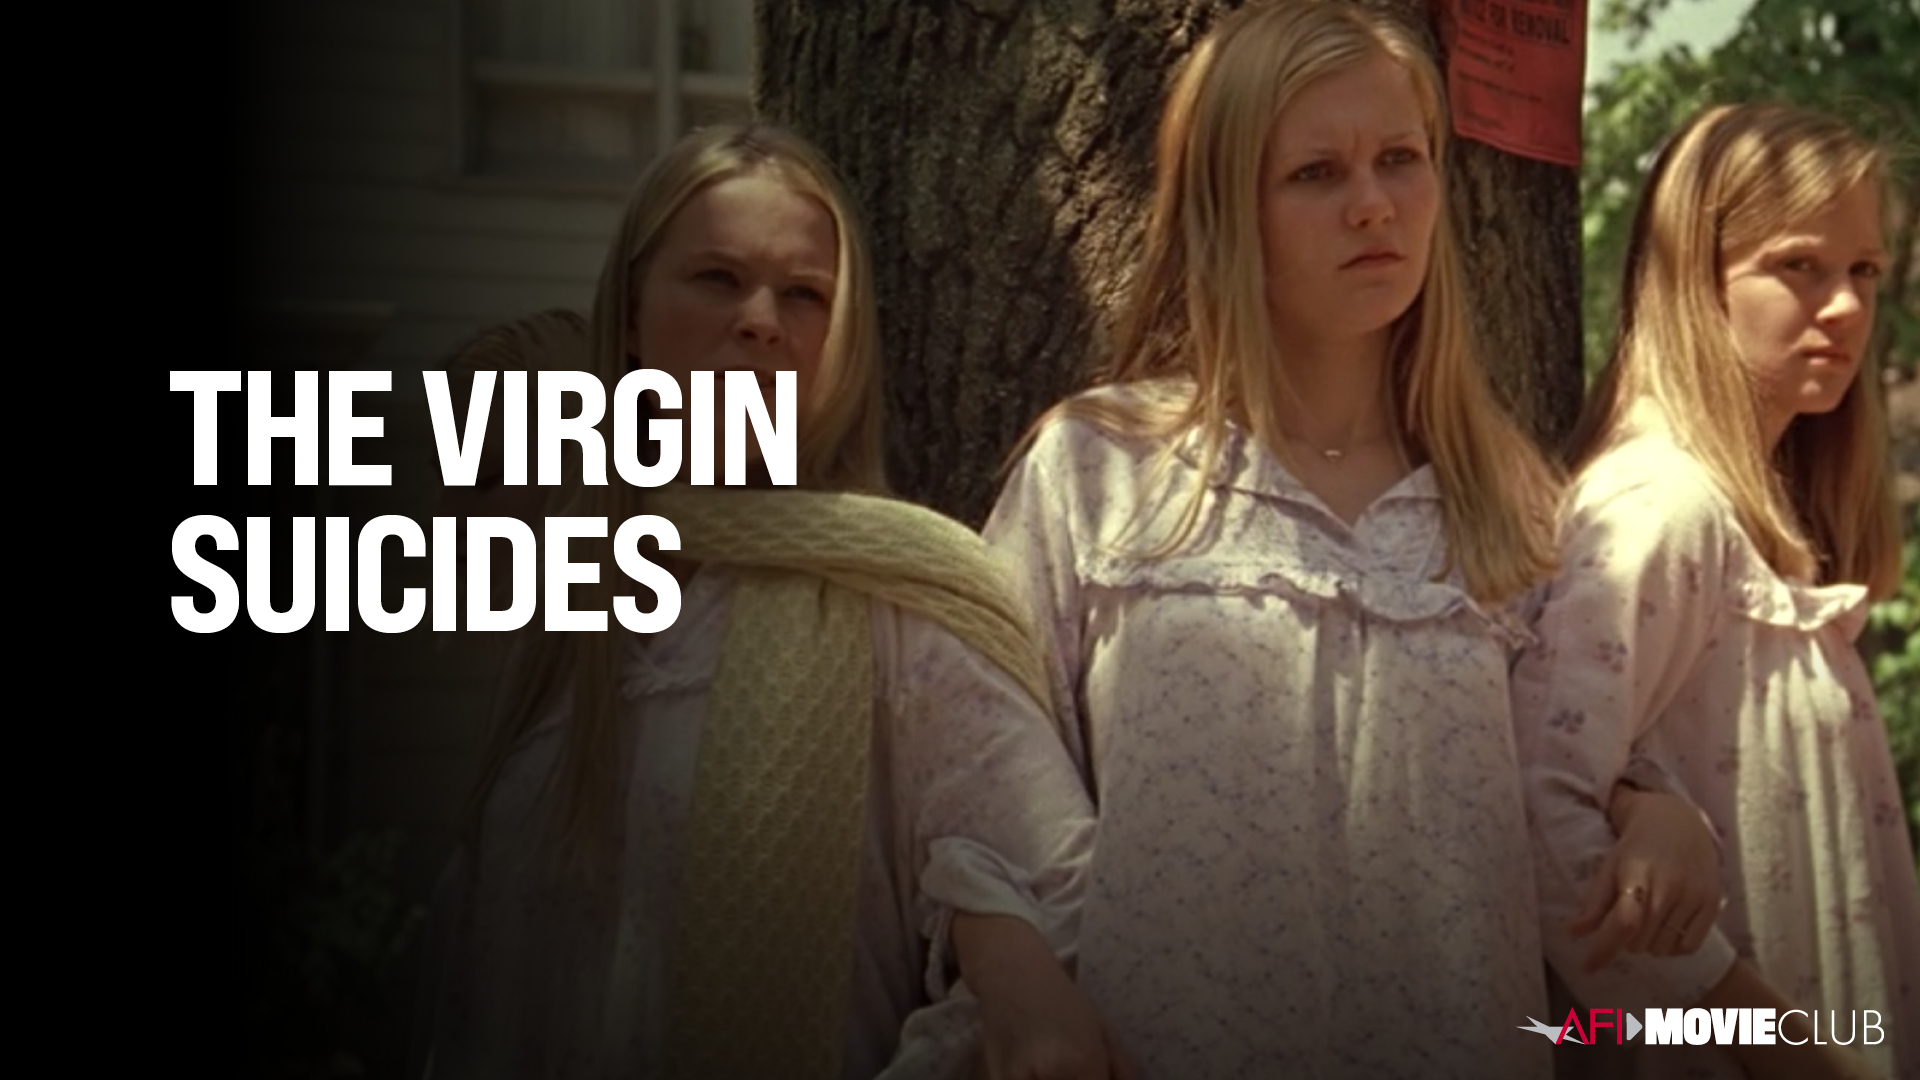 The Virgin Suicides Film Still - Leslie Hayman, Kirsten Dunst and A. J. Cook